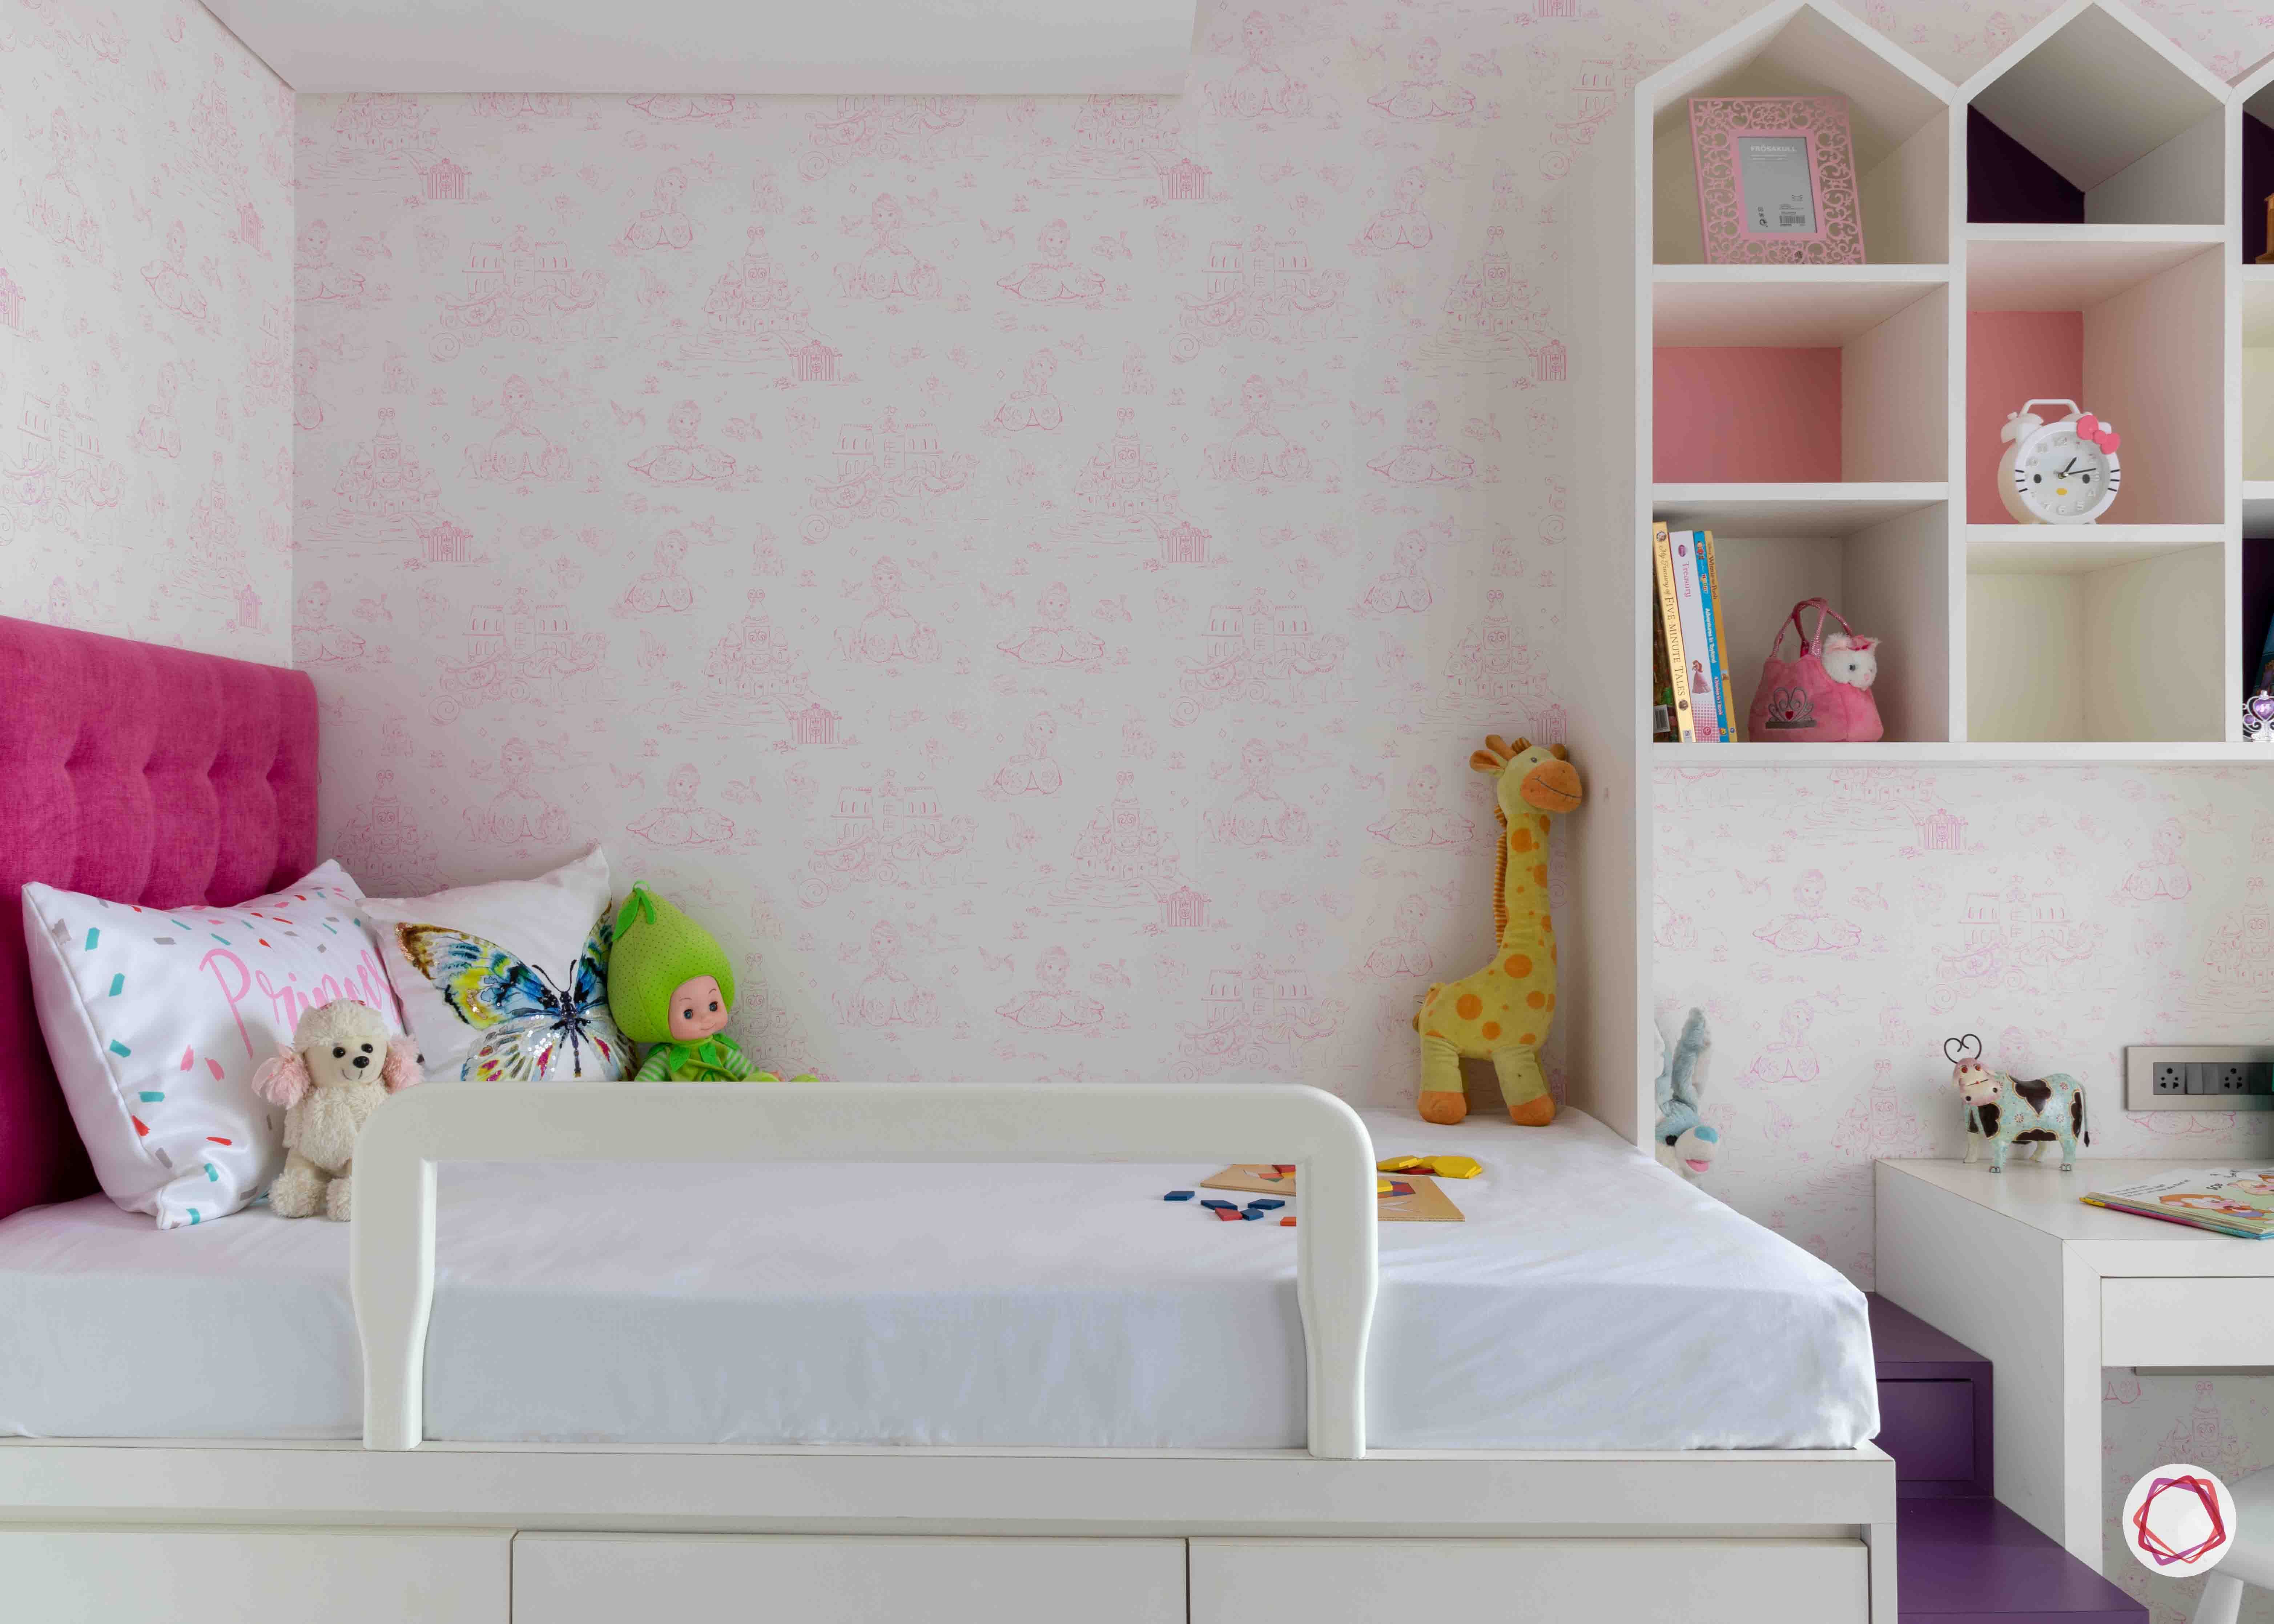 apartment-design-castle-like-unit-pink-wallpaper-designs